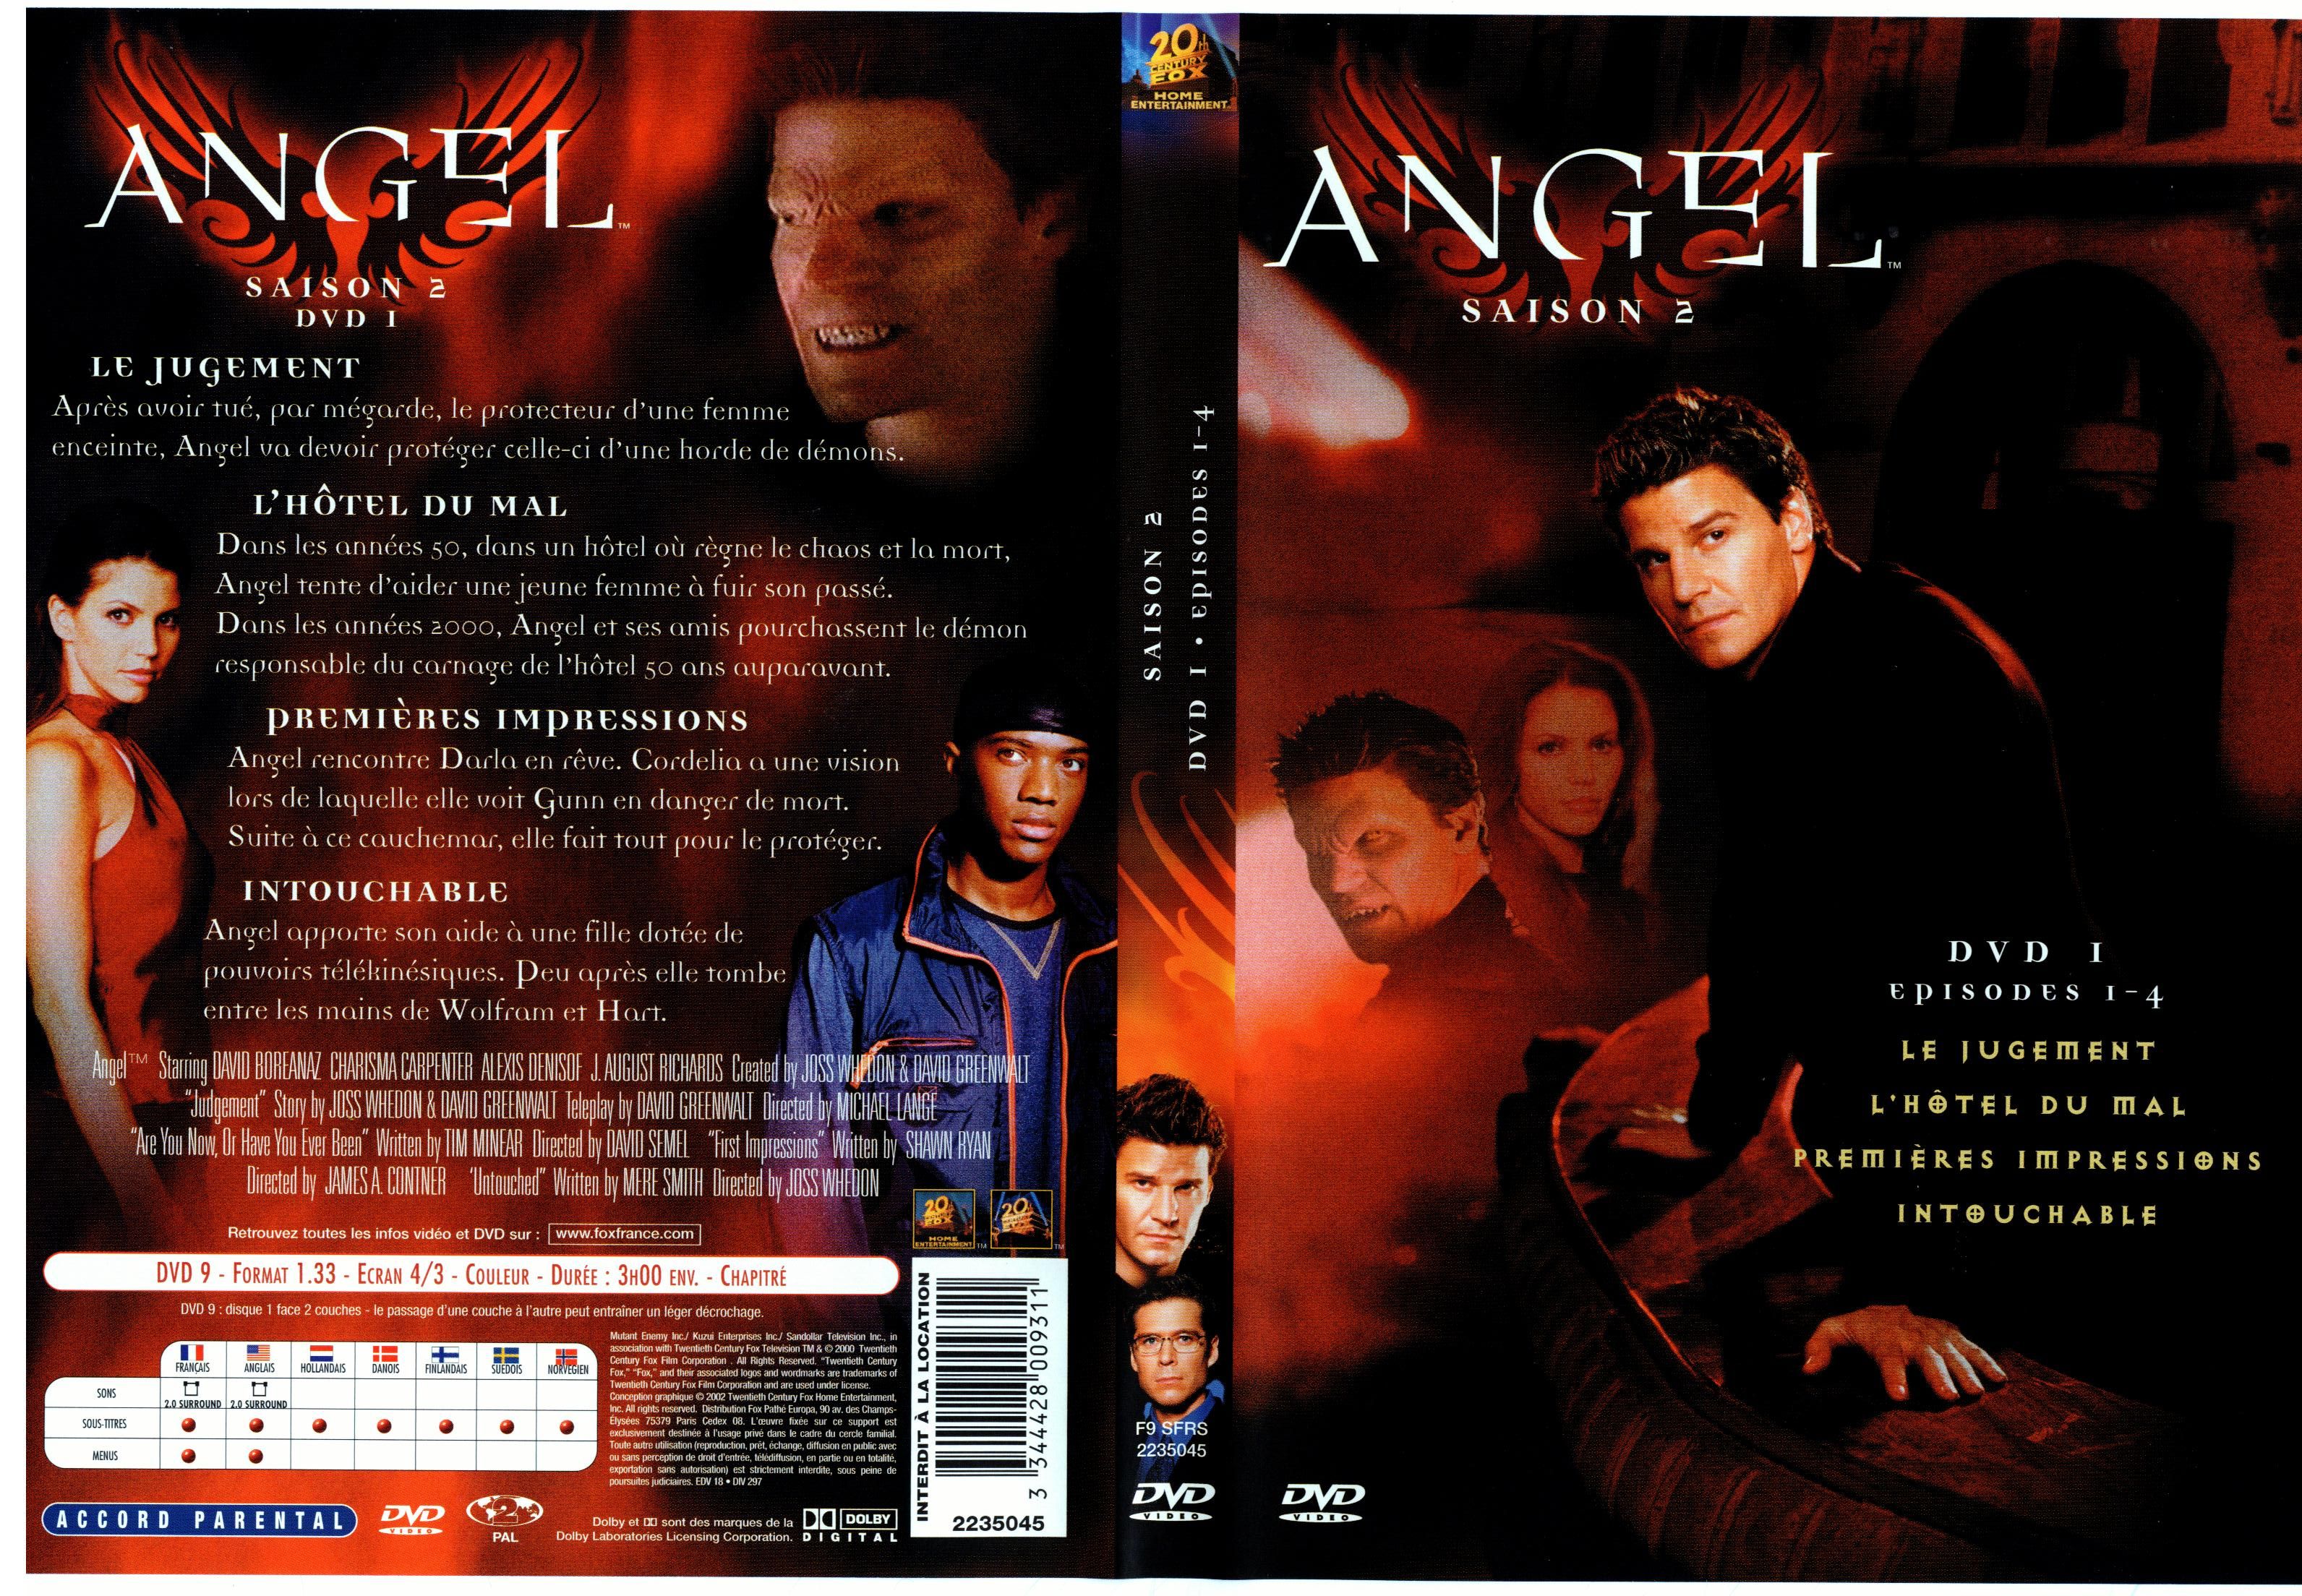 Jaquette DVD Angel Saison 2 dvd 1